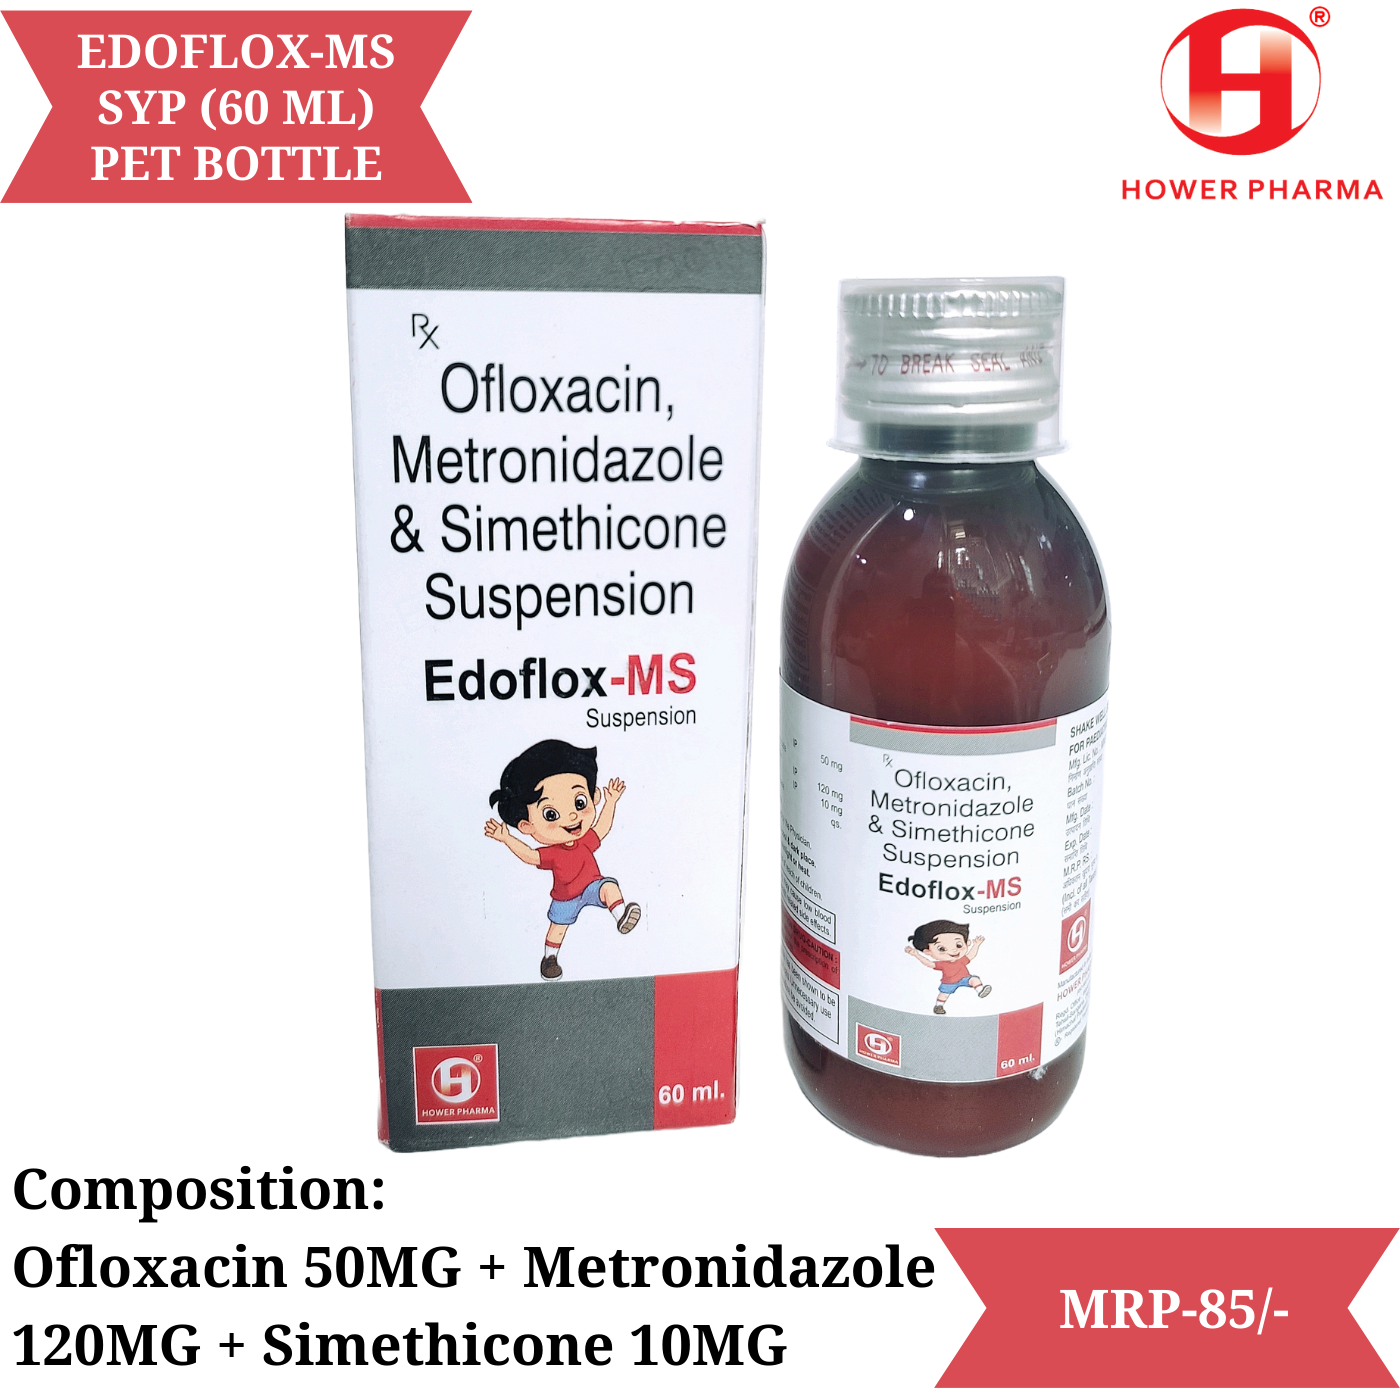 Edoflox-MS